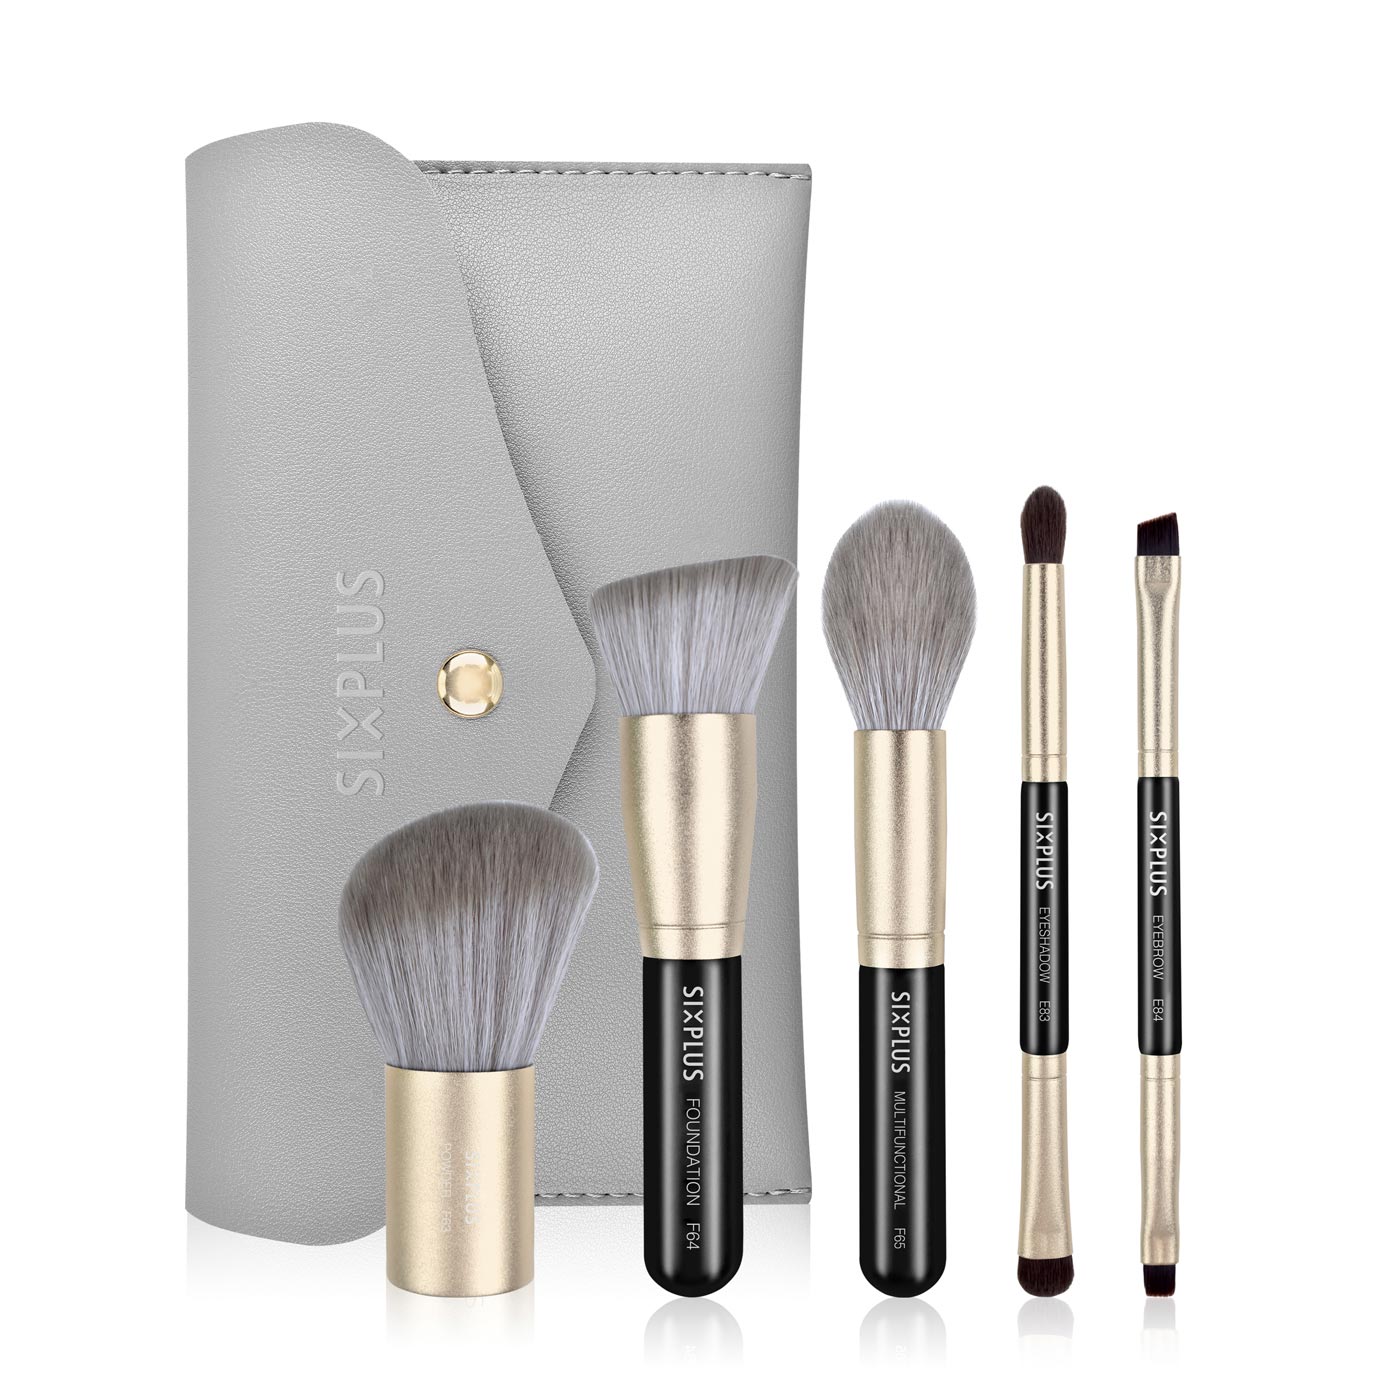 SIXPLUS 5PCS Portable Makeup Brush Set